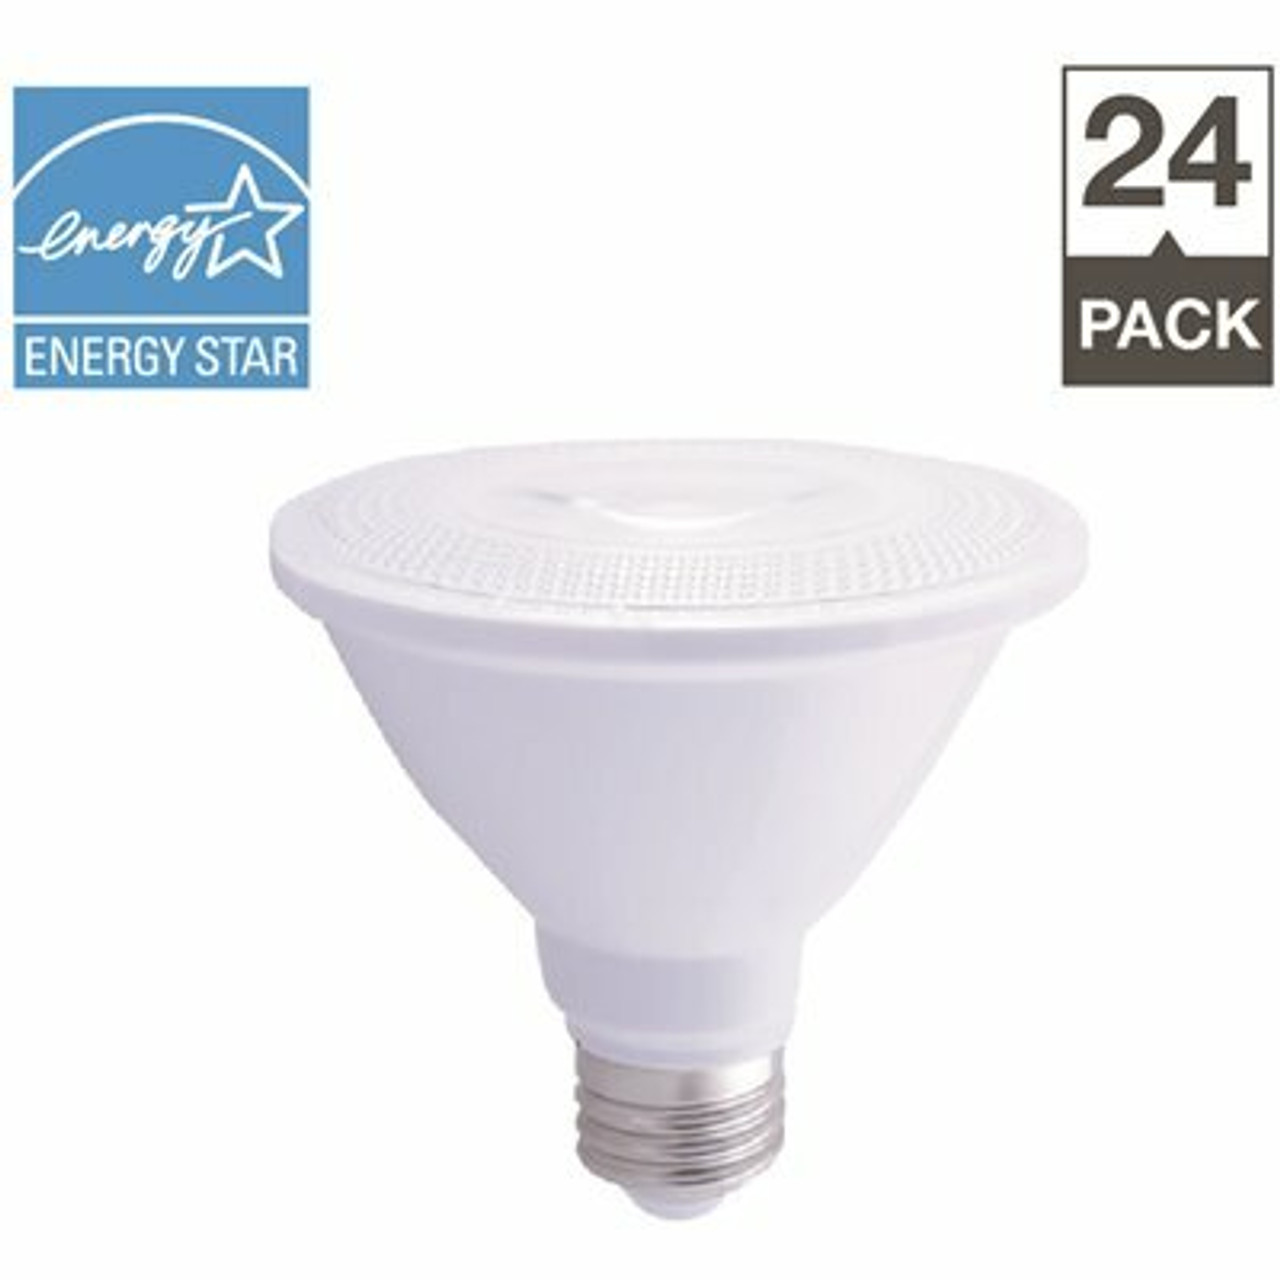 Simply Conserve 75-Watt Equivalent Par30S Dimmable Short Neck Energy Star Led Light Bulb Soft White (24-Pack)